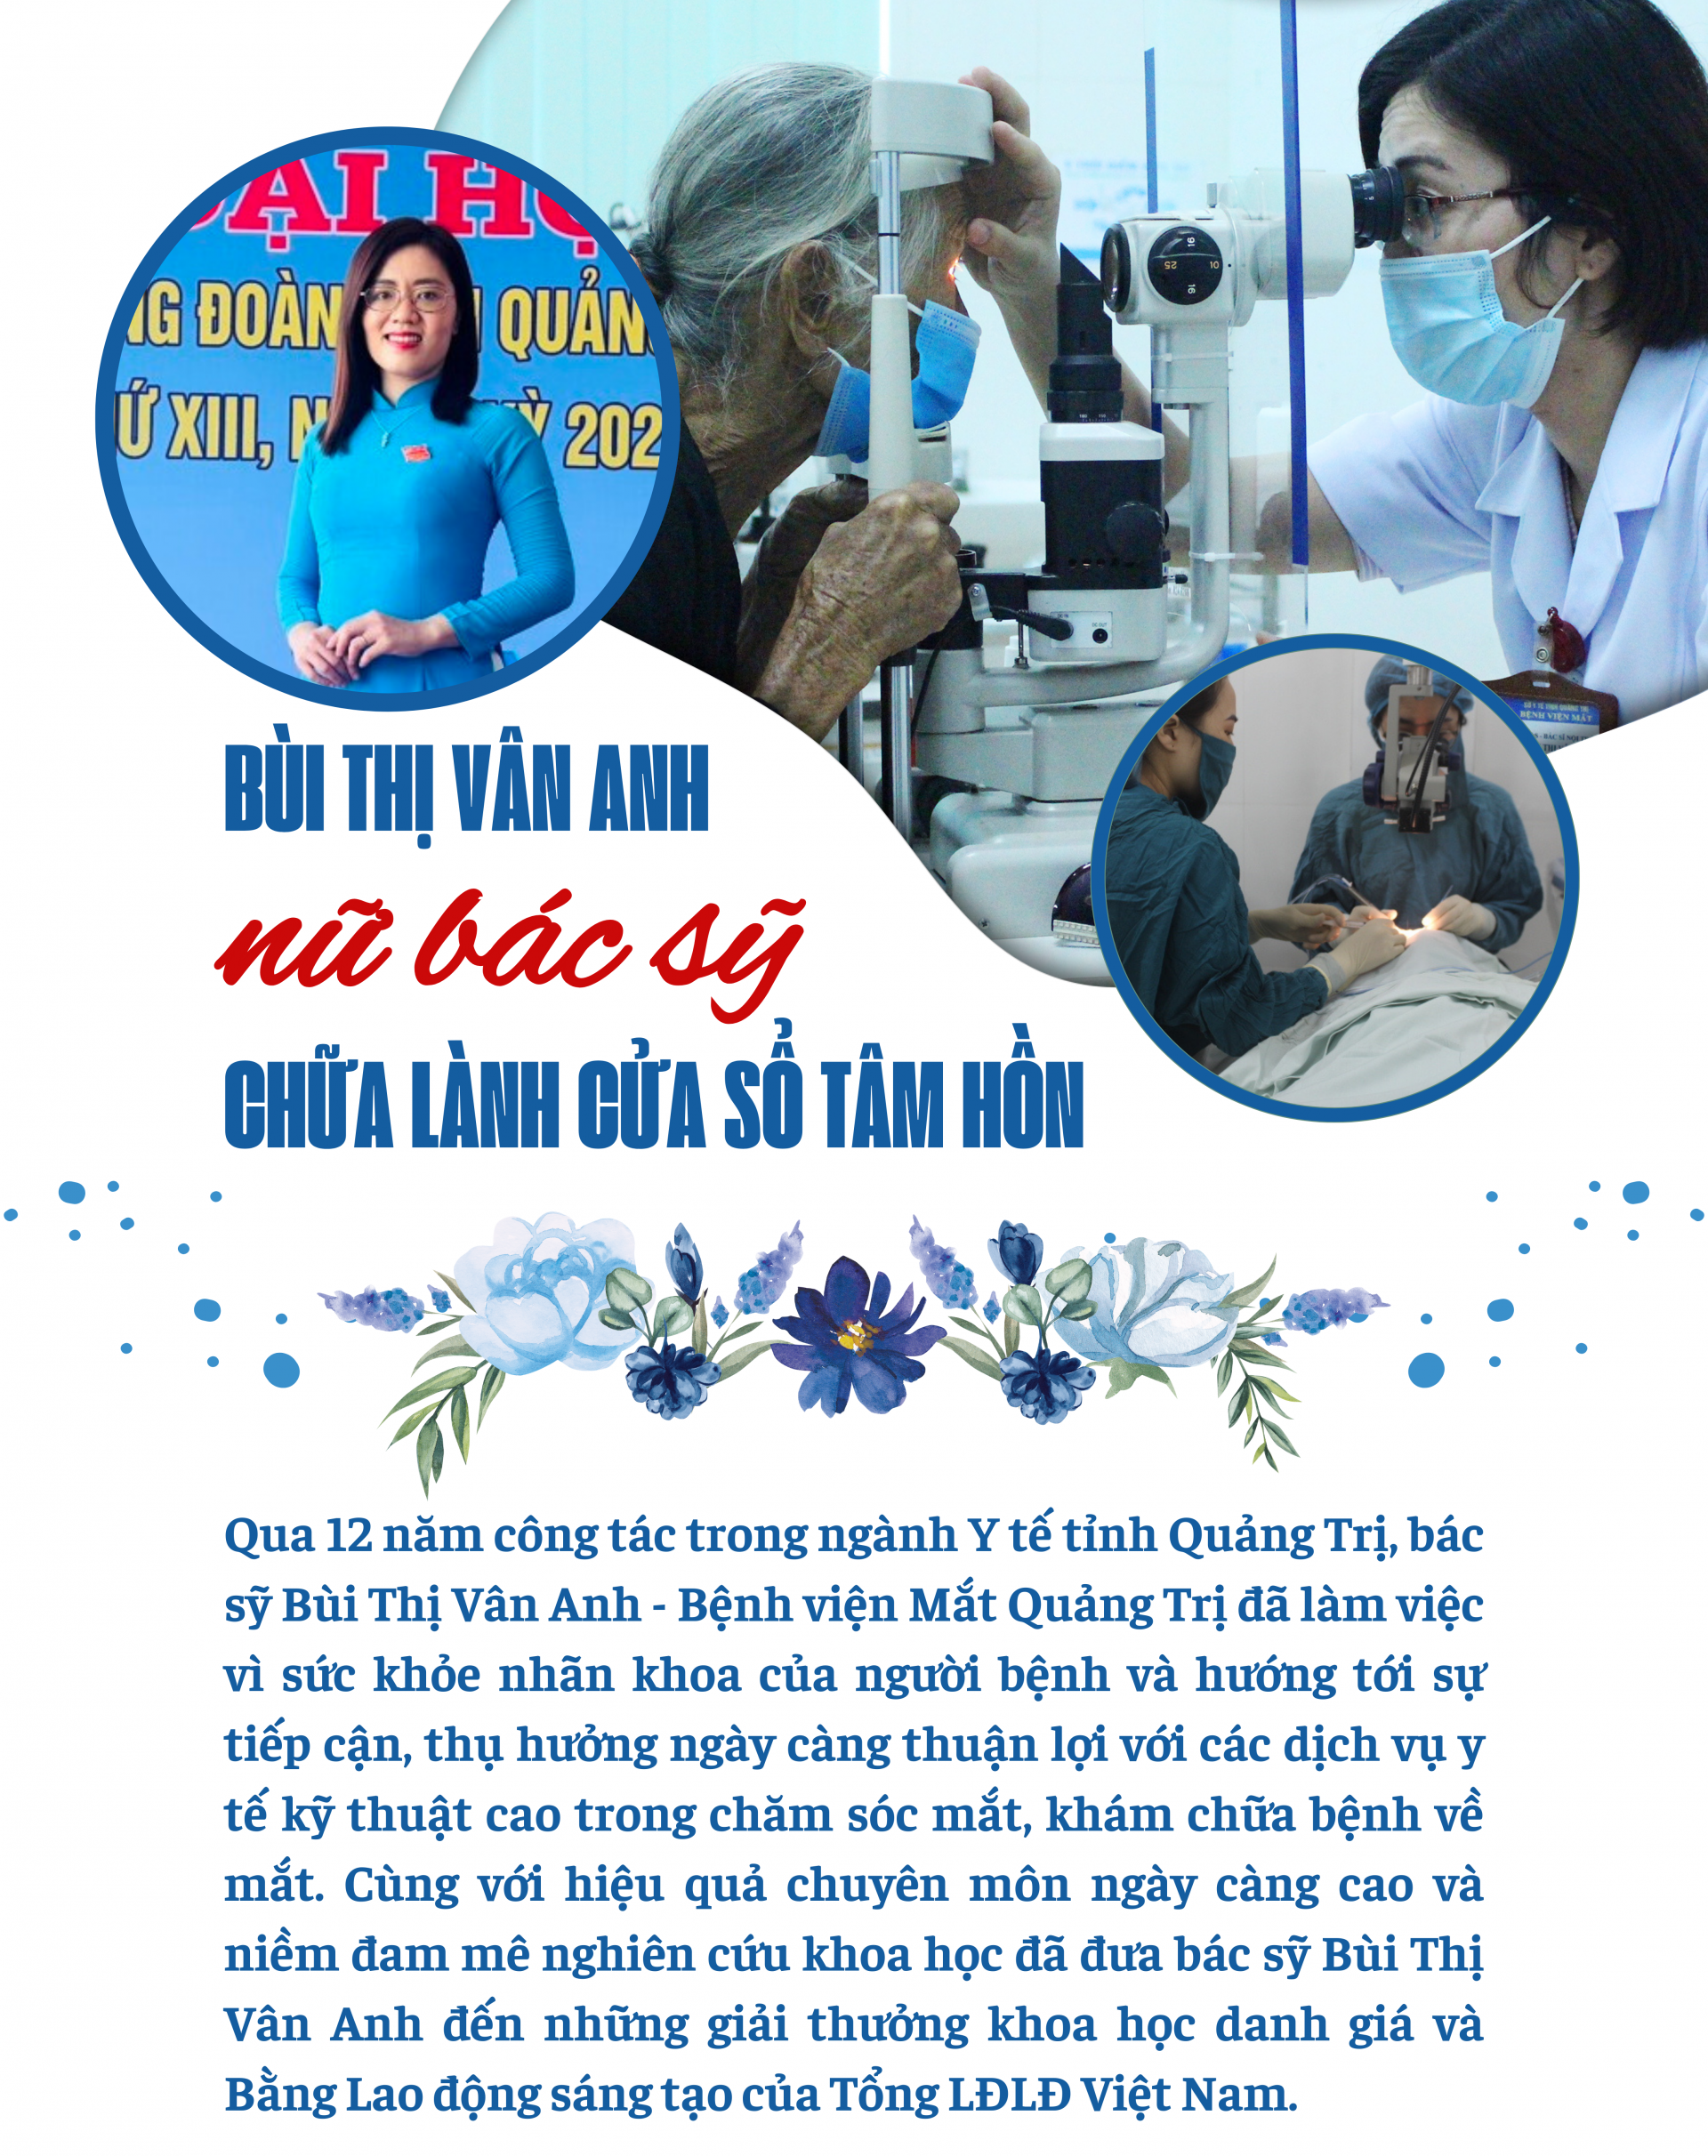 Bùi Thị Vân Anh - nữ bác sỹ chữa lành 